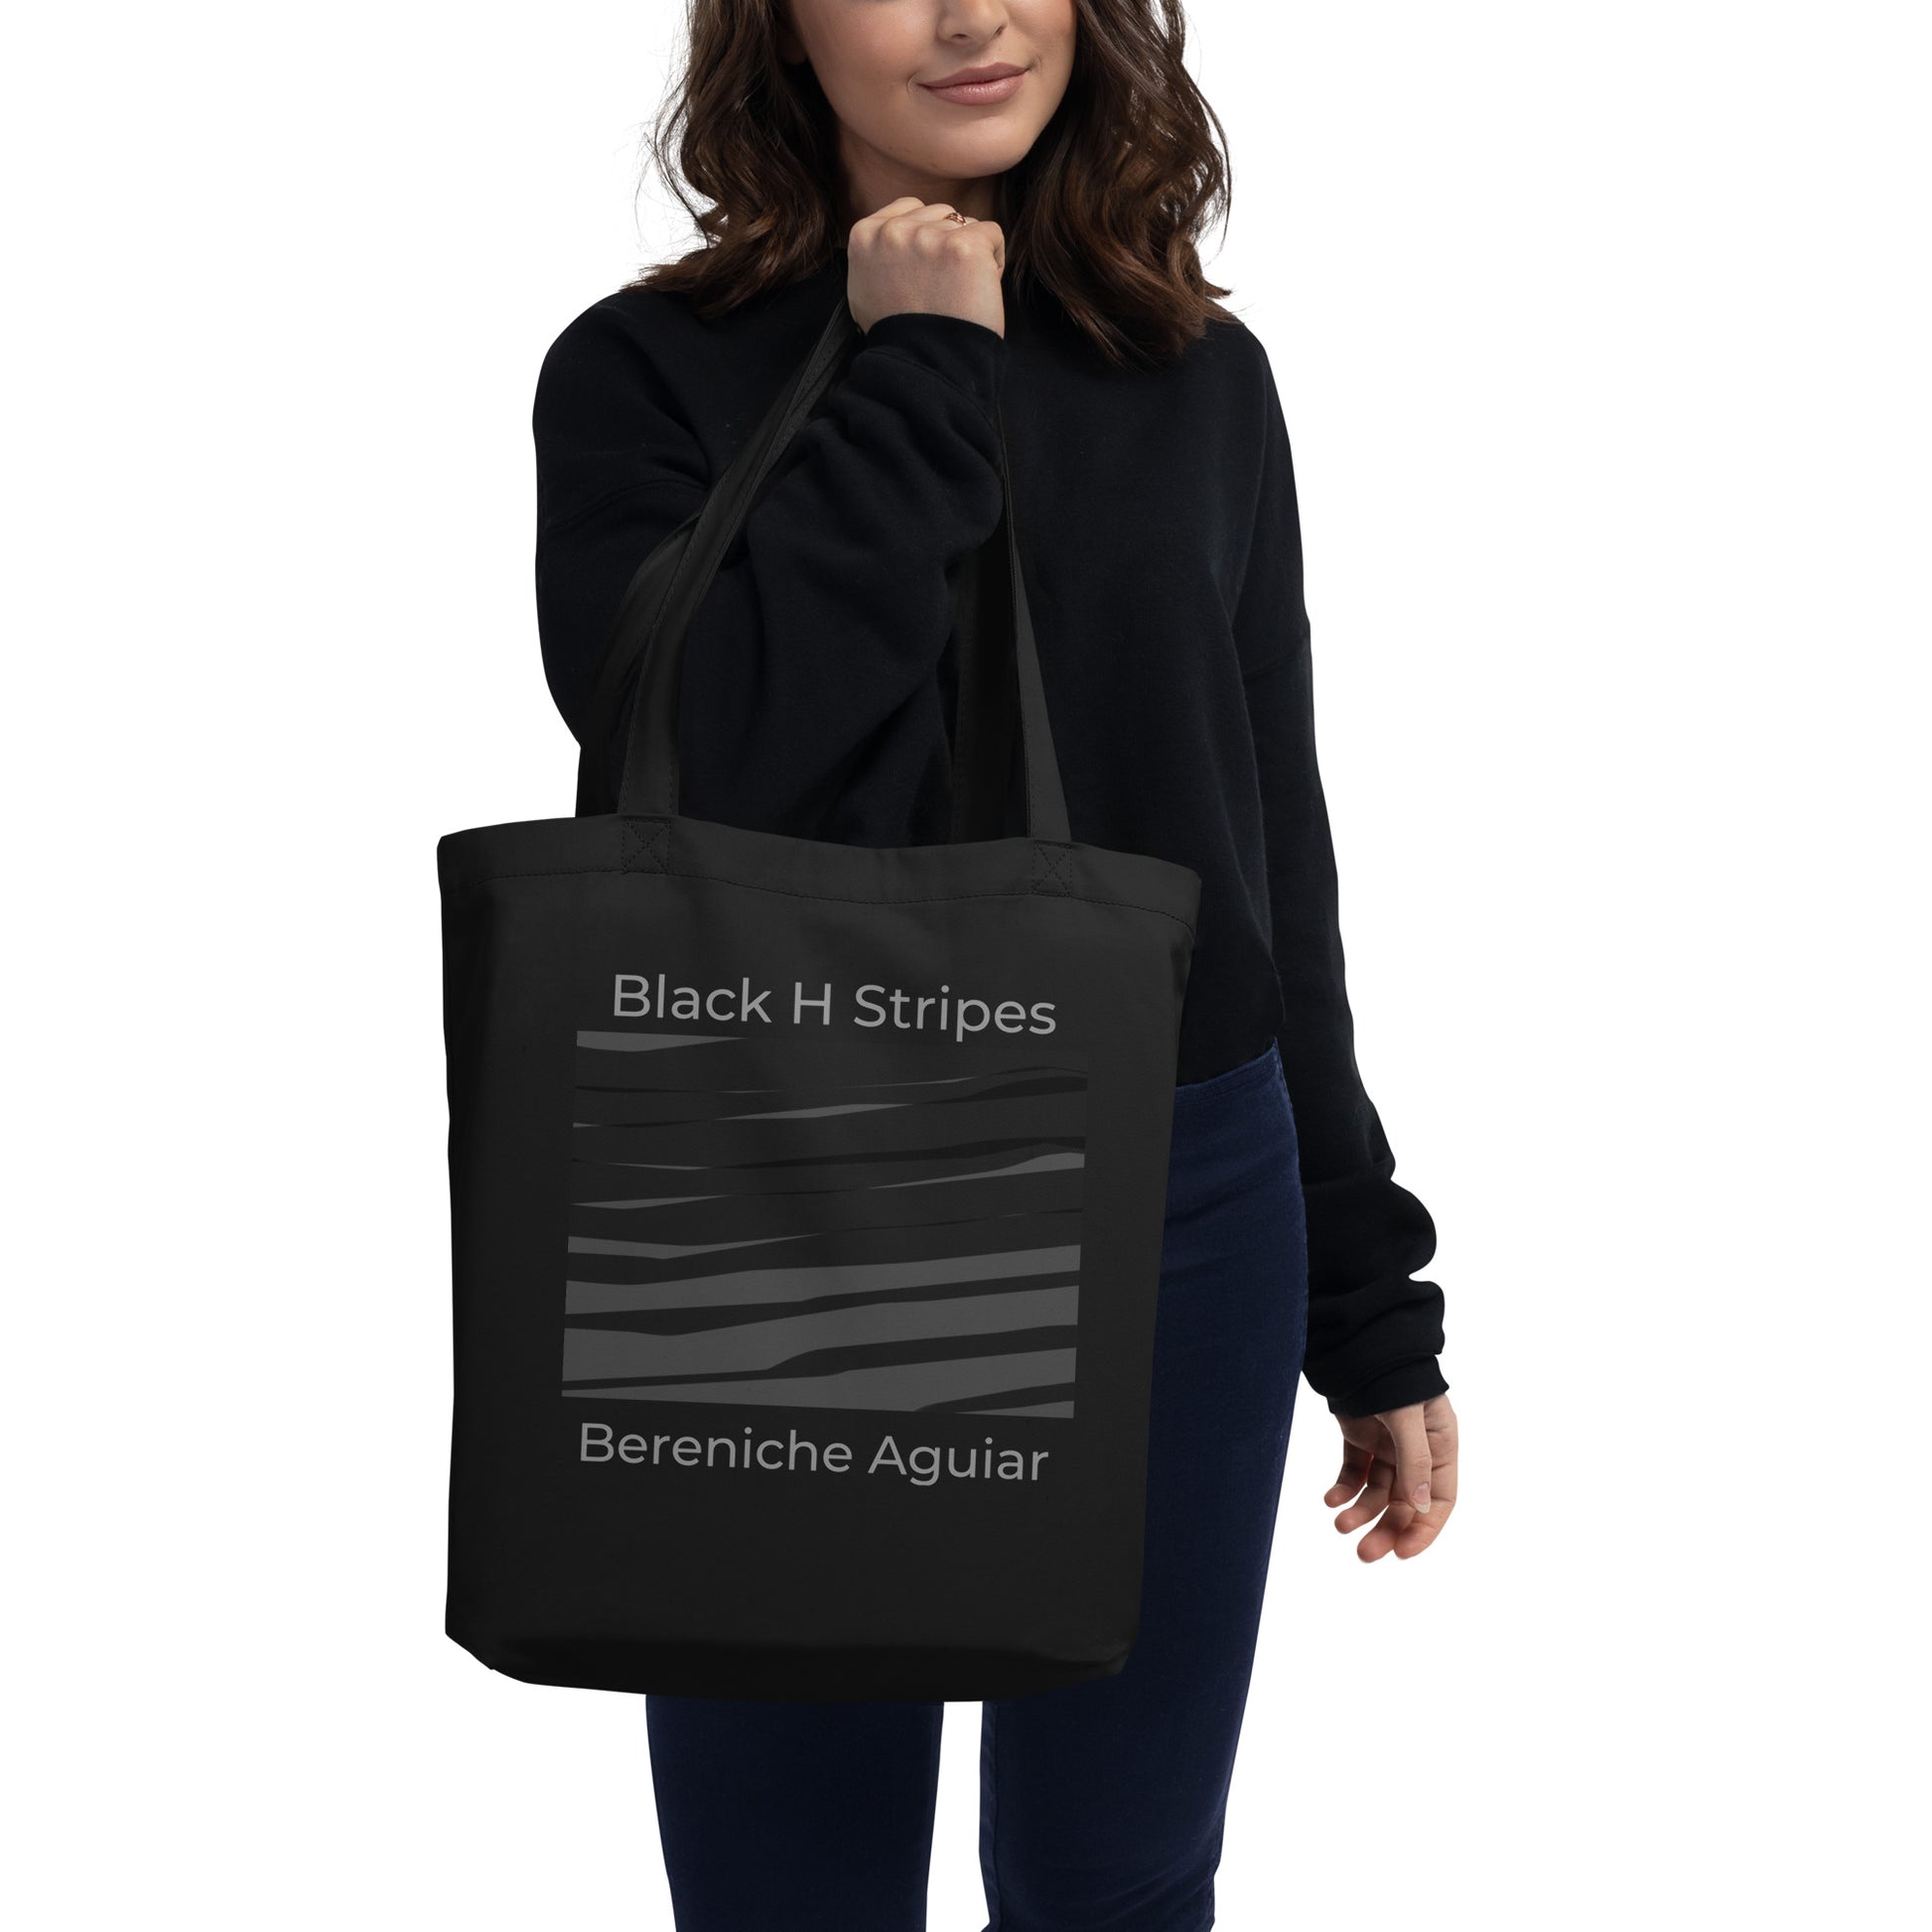 Black H Stripes BeSculpt Eco Tote Bag